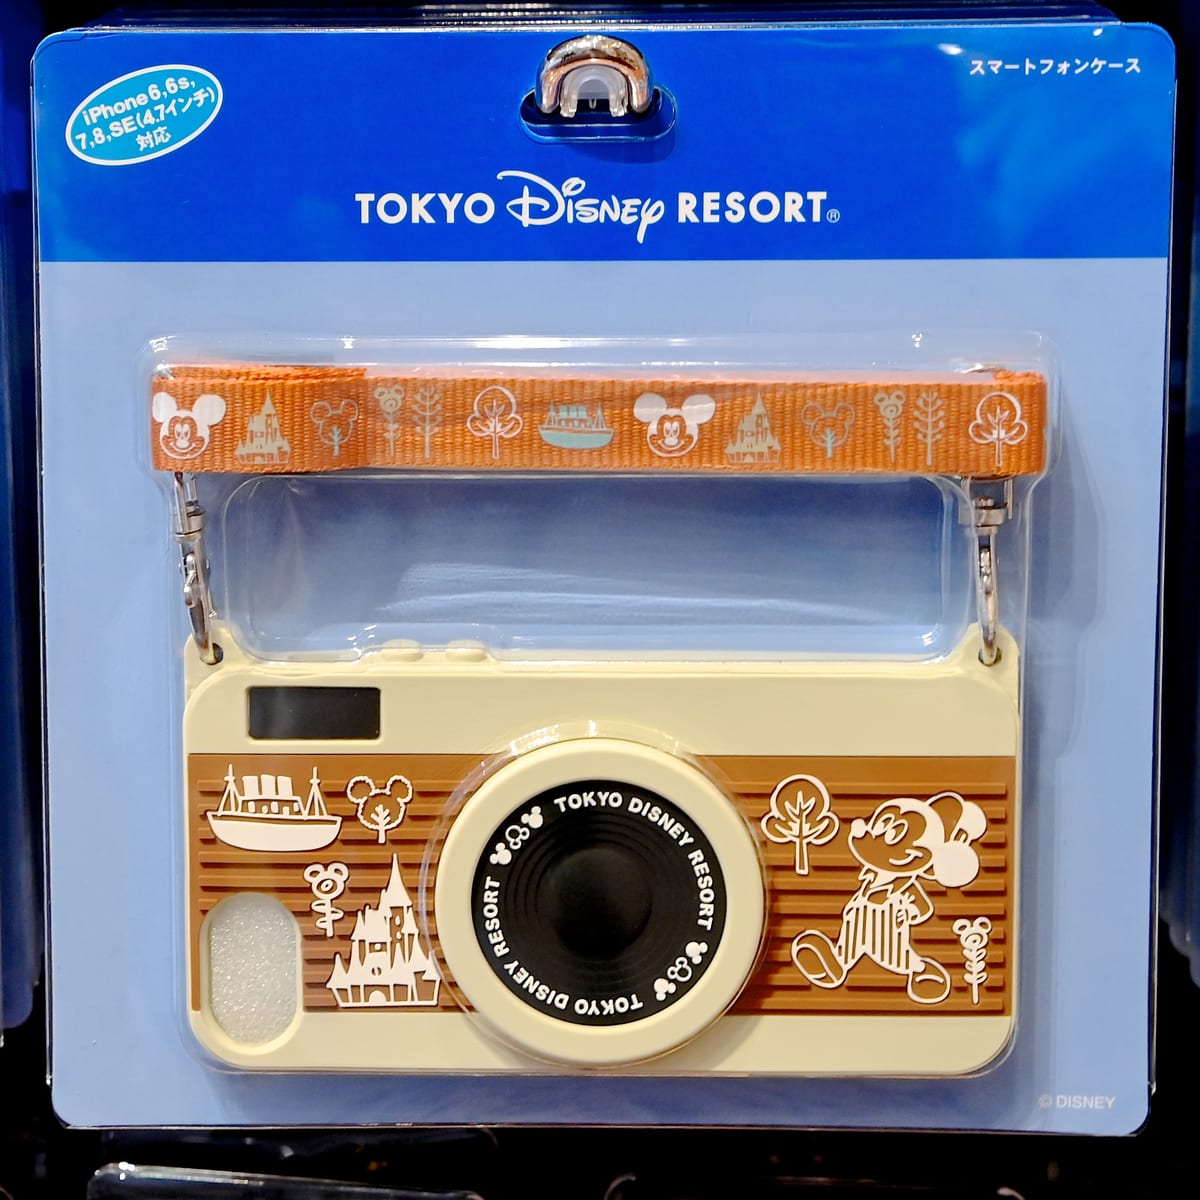 ネックストラップがついたカメラ型 東京ディズニーランドiphoneケース